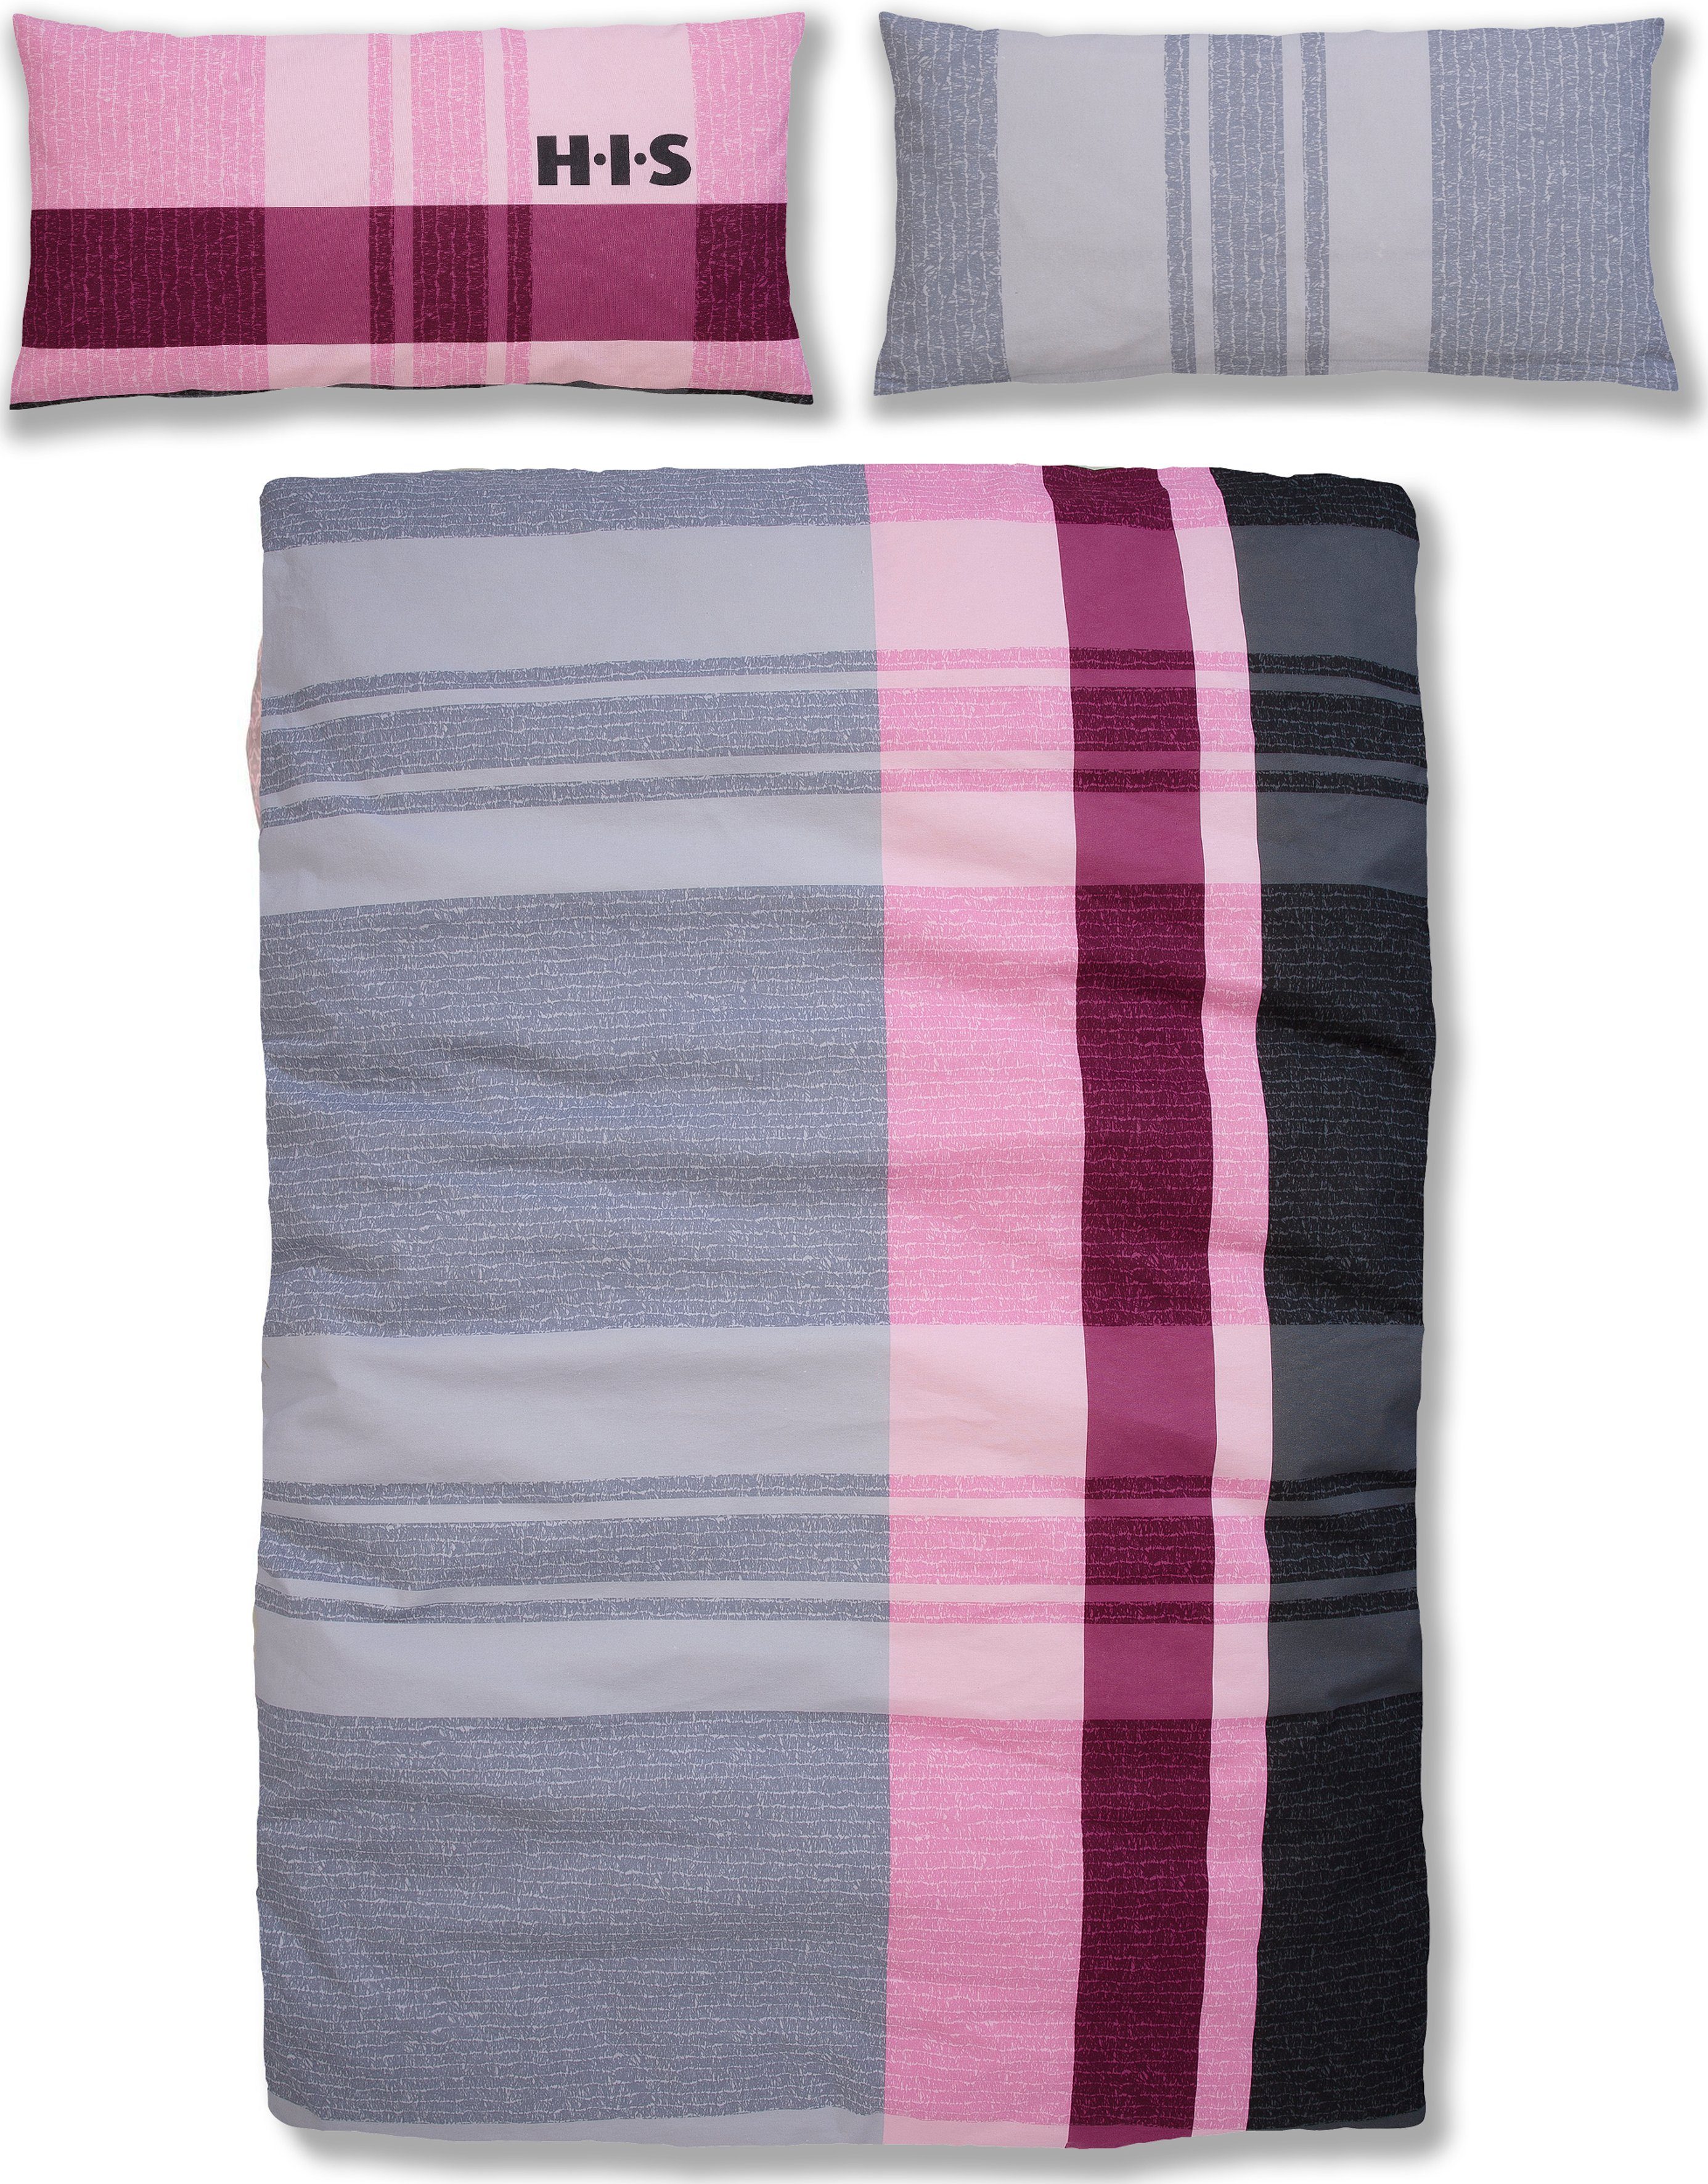 Bettwäsche Pascal in 135x200 oder 155x220 cm, H.I.S, Biber, 2 teilig, karierte Bettwäsche aus Baumwolle, mit Reißverschluss rosa/grau